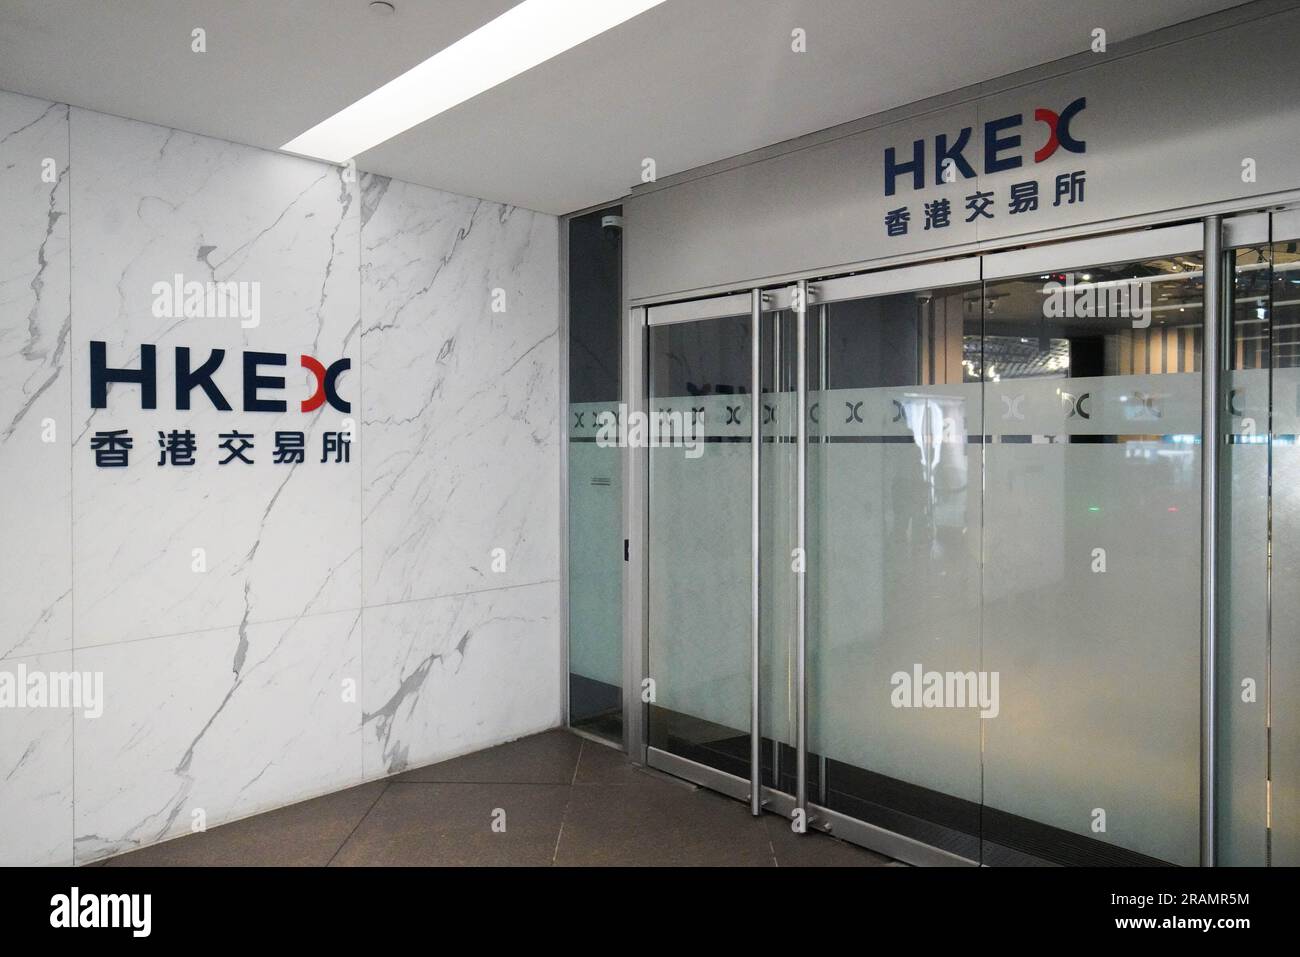 Das Logo von HKEX, das vor ihrem Büro zu sehen ist. Hong Kong Exchange and Clearing Limited (HKEX) ist ein führender Betreiber verschiedener Finanzmärkte, darunter Aktien-, Rohstoff-, festverzinsliche und Devisenmärkte. Sie verwaltet diese Märkte über ihre hundertprozentigen Tochtergesellschaften, nämlich die Stock Exchange of Hong Kong Limited (SEHK), Hong Kong Futures Exchange Limited (HKFE) und London Metal Exchange (LME). Stockfoto